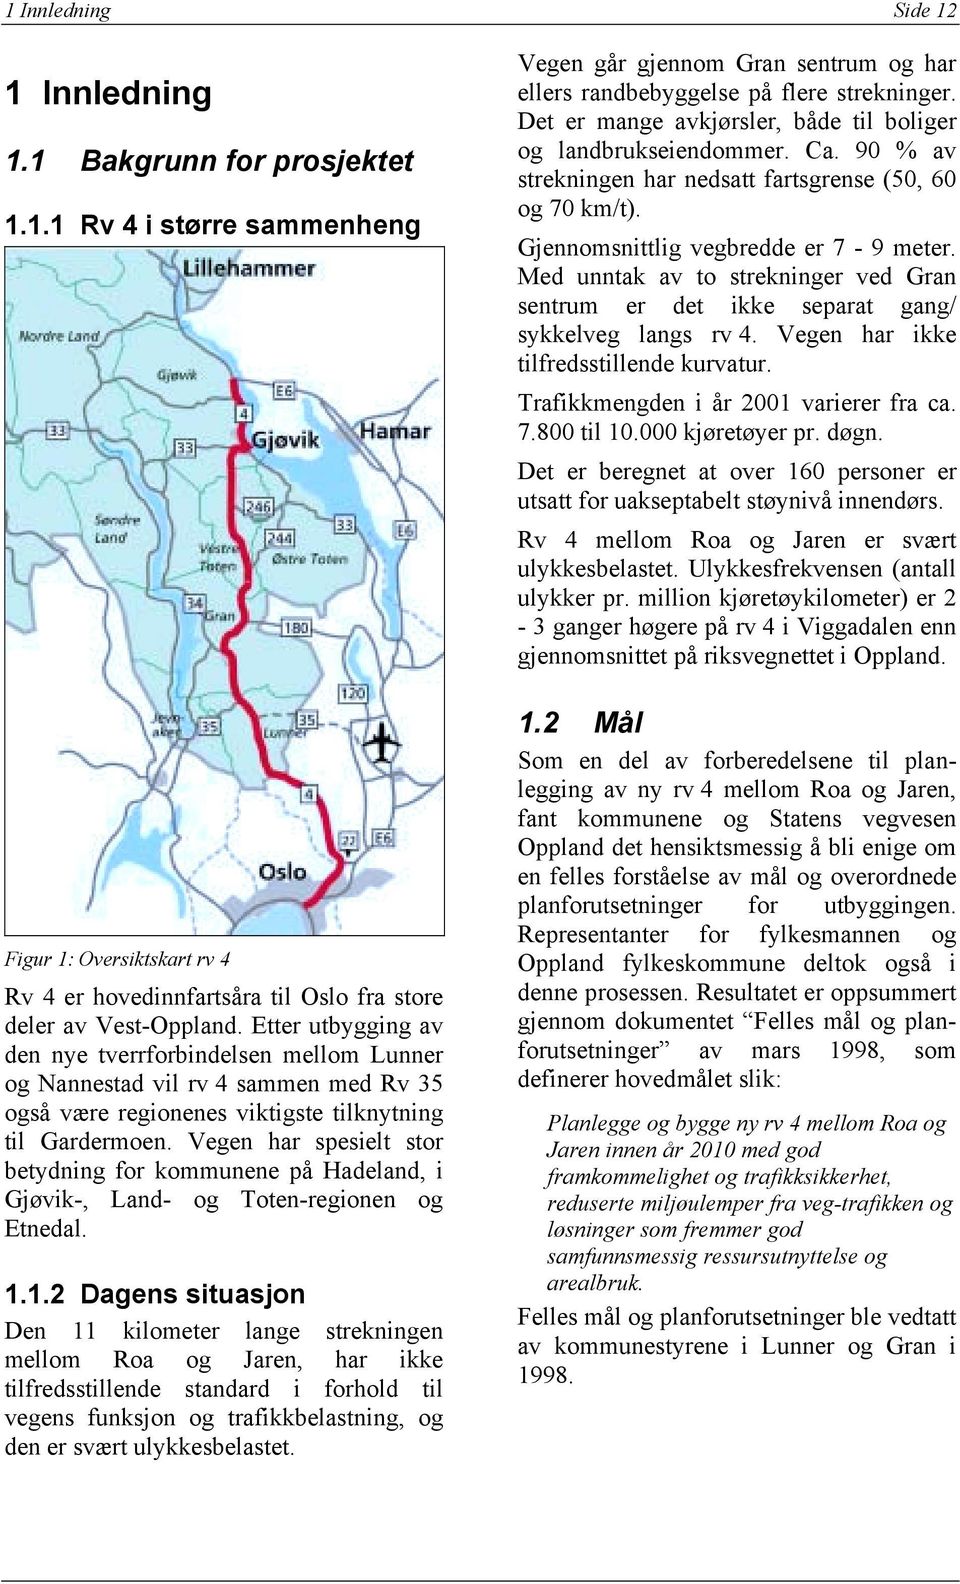 Vegen har spesielt stor betydning for kommunene på Hadeland, i Gjøvik-, Land- og Toten-regionen og Etnedal. 1.